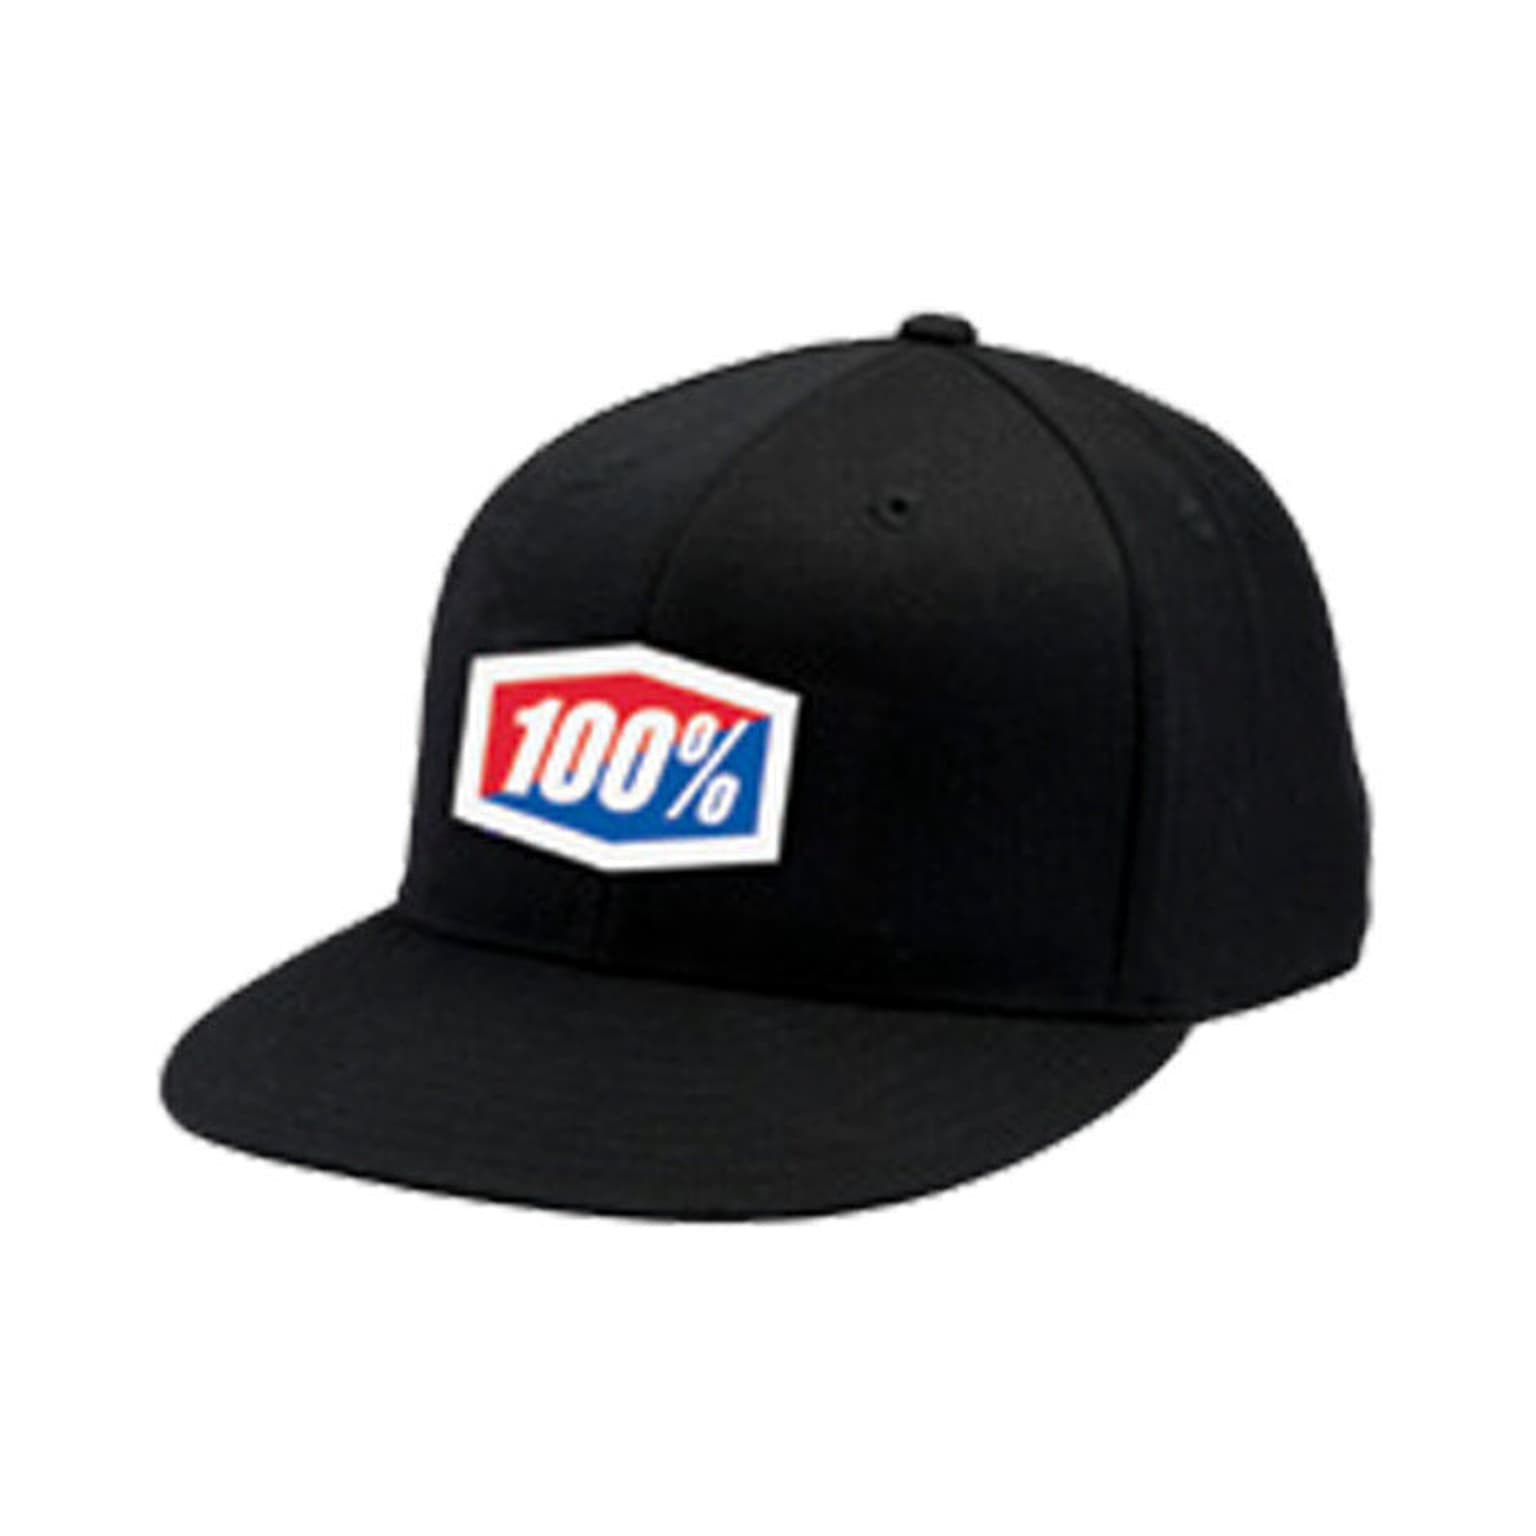 100% 100% Official J-Fit Flexfit Cap noir 1